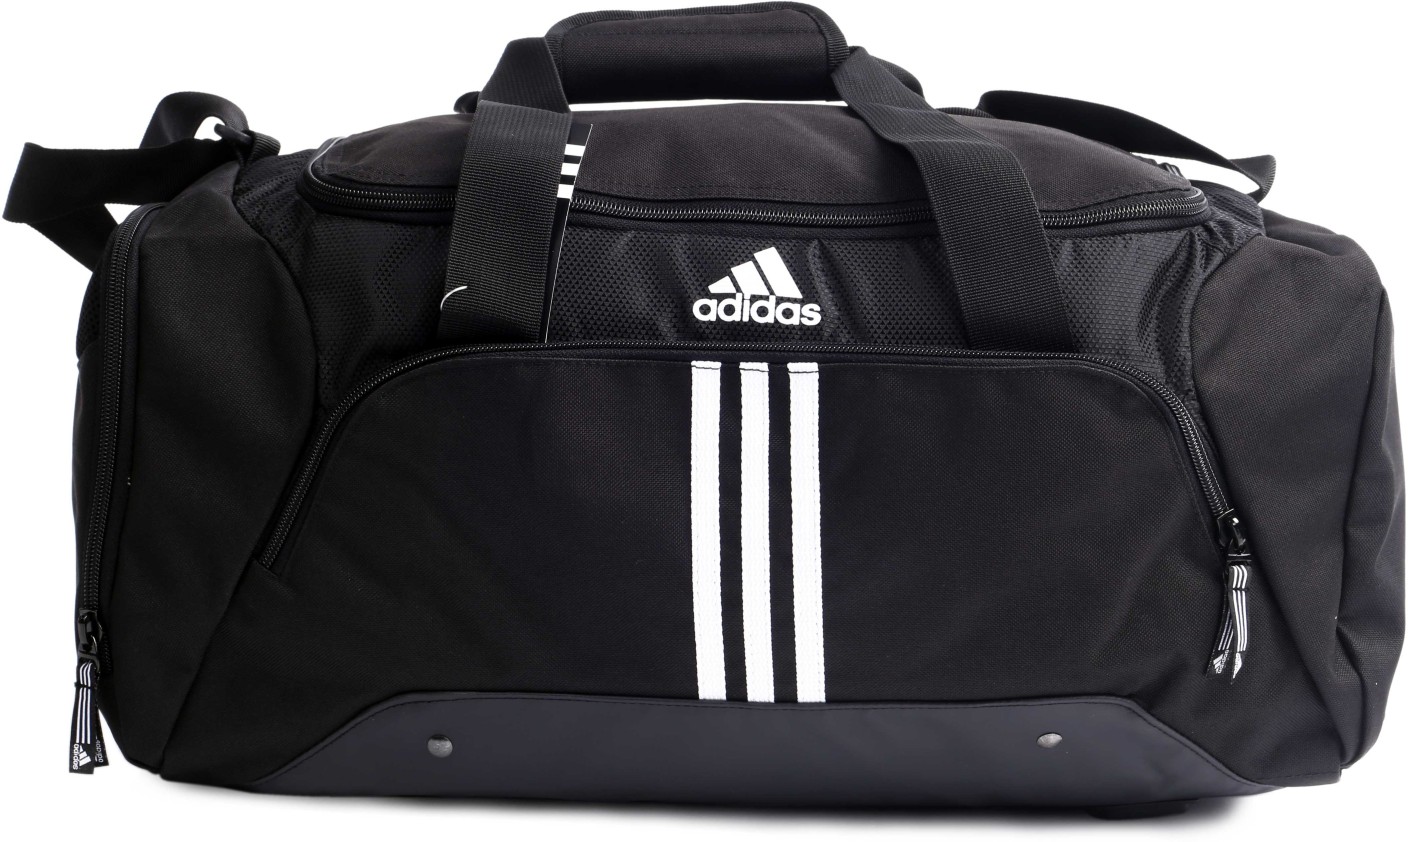 adidas travel duffel bag